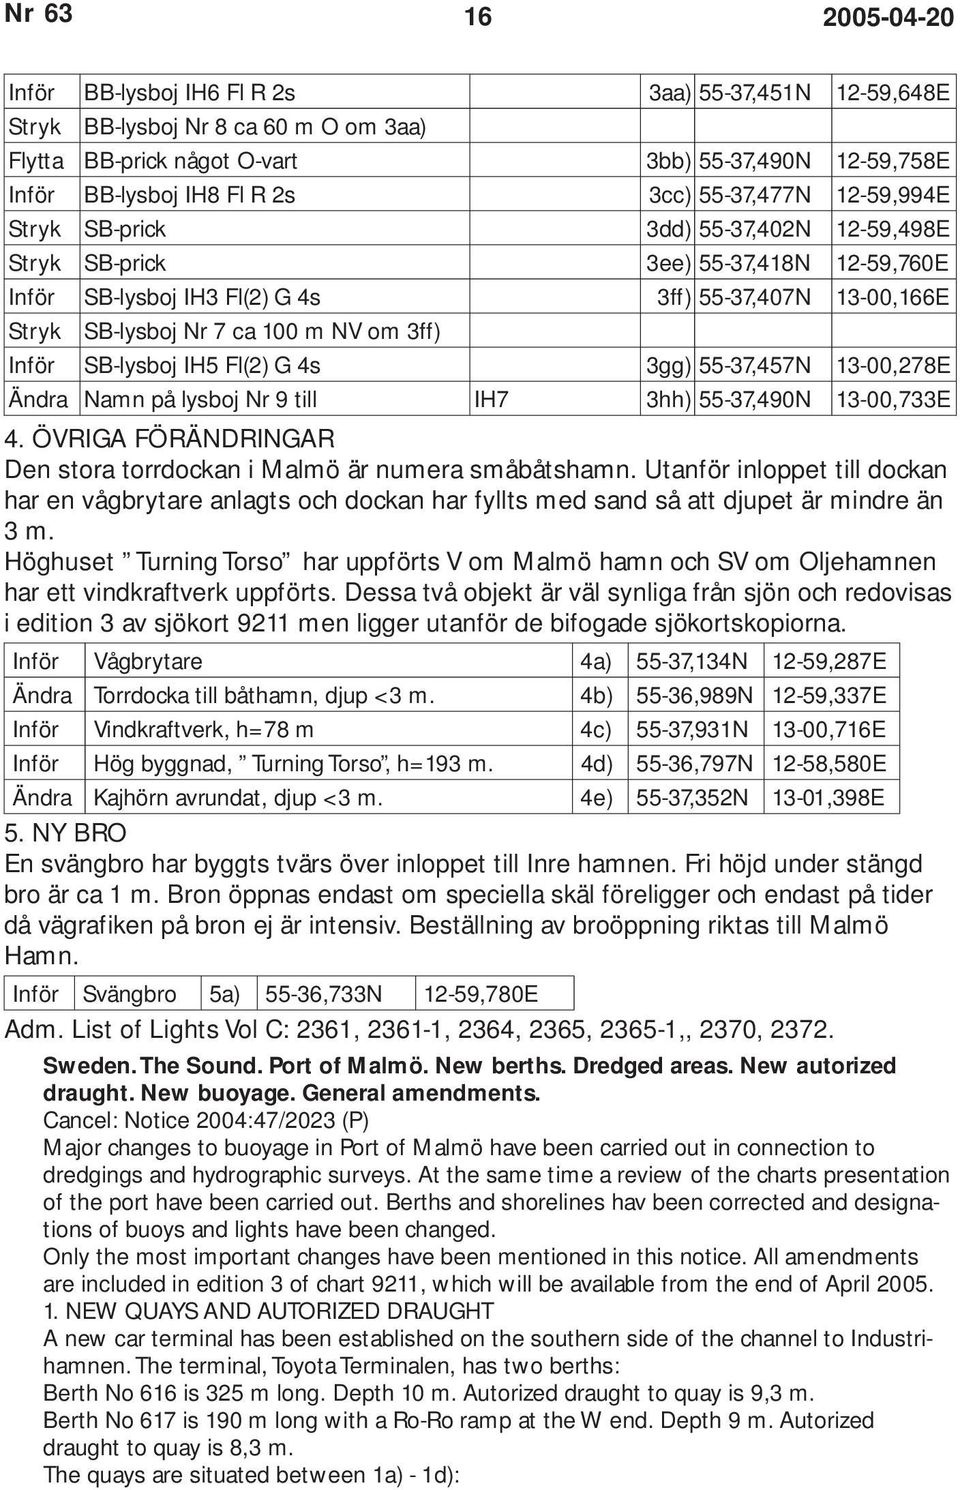 3ff) Inför SB-lysboj IH5 Fl(2) G 4s 3gg) 55-37,457N 13-00,278E Ändra Namn på lysboj Nr 9 till IH7 3hh) 55-37,490N 13-00,733E 4. ÖVRIGA FÖRÄNDRINGAR Den stora torrdockan i Malmö är numera småbåtshamn.